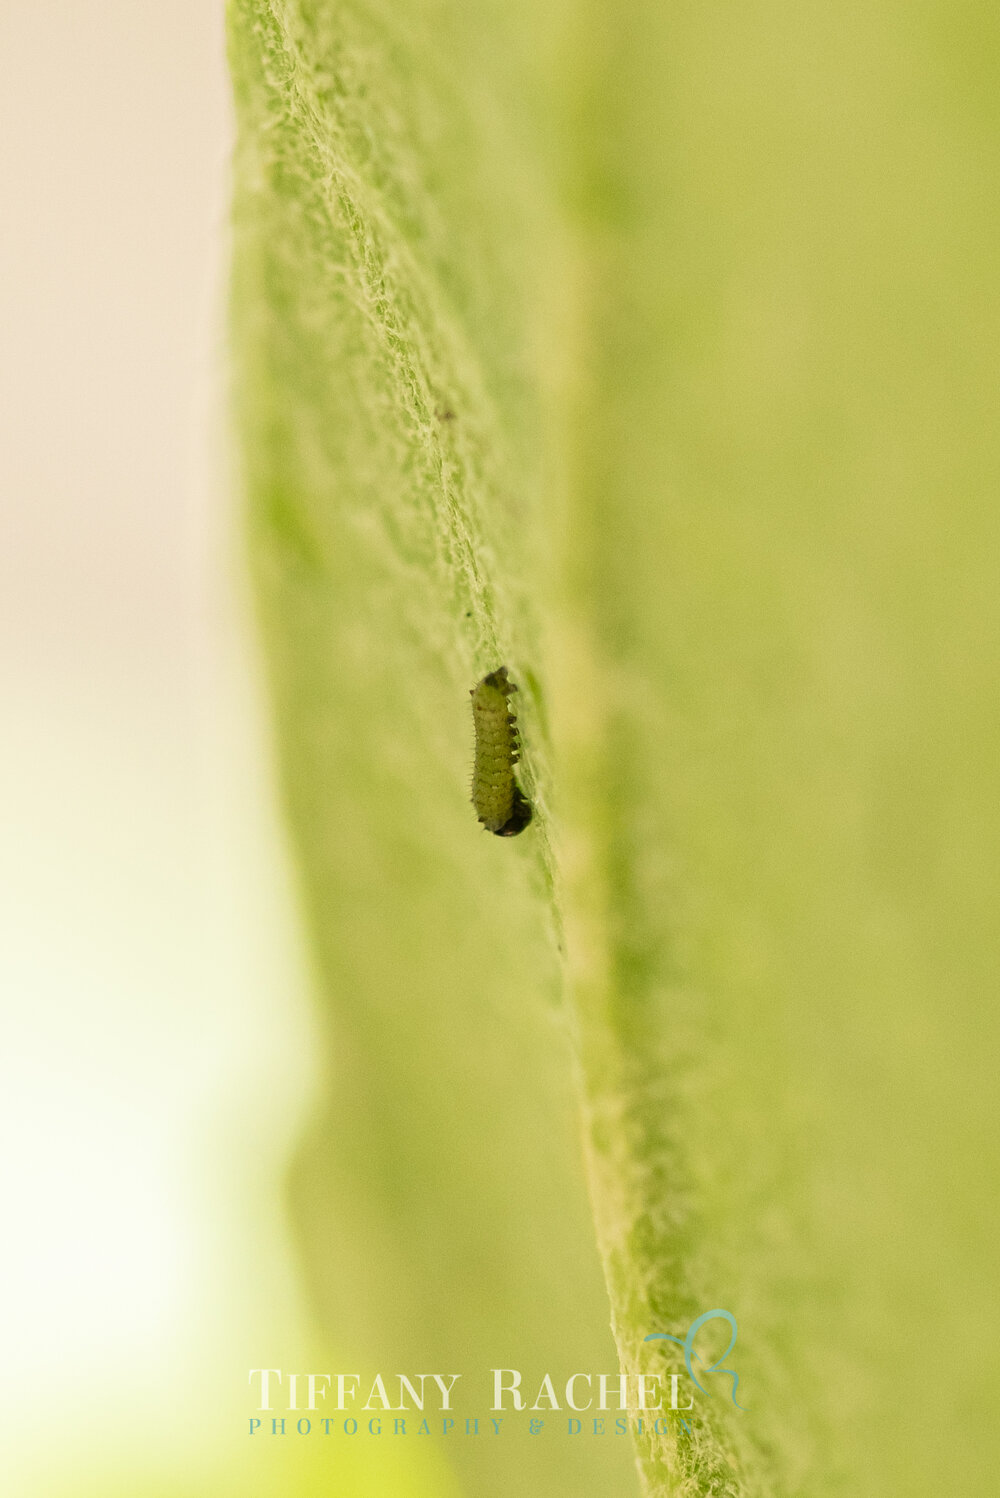 1st Instar Monarch Caterpillar on Milkweed